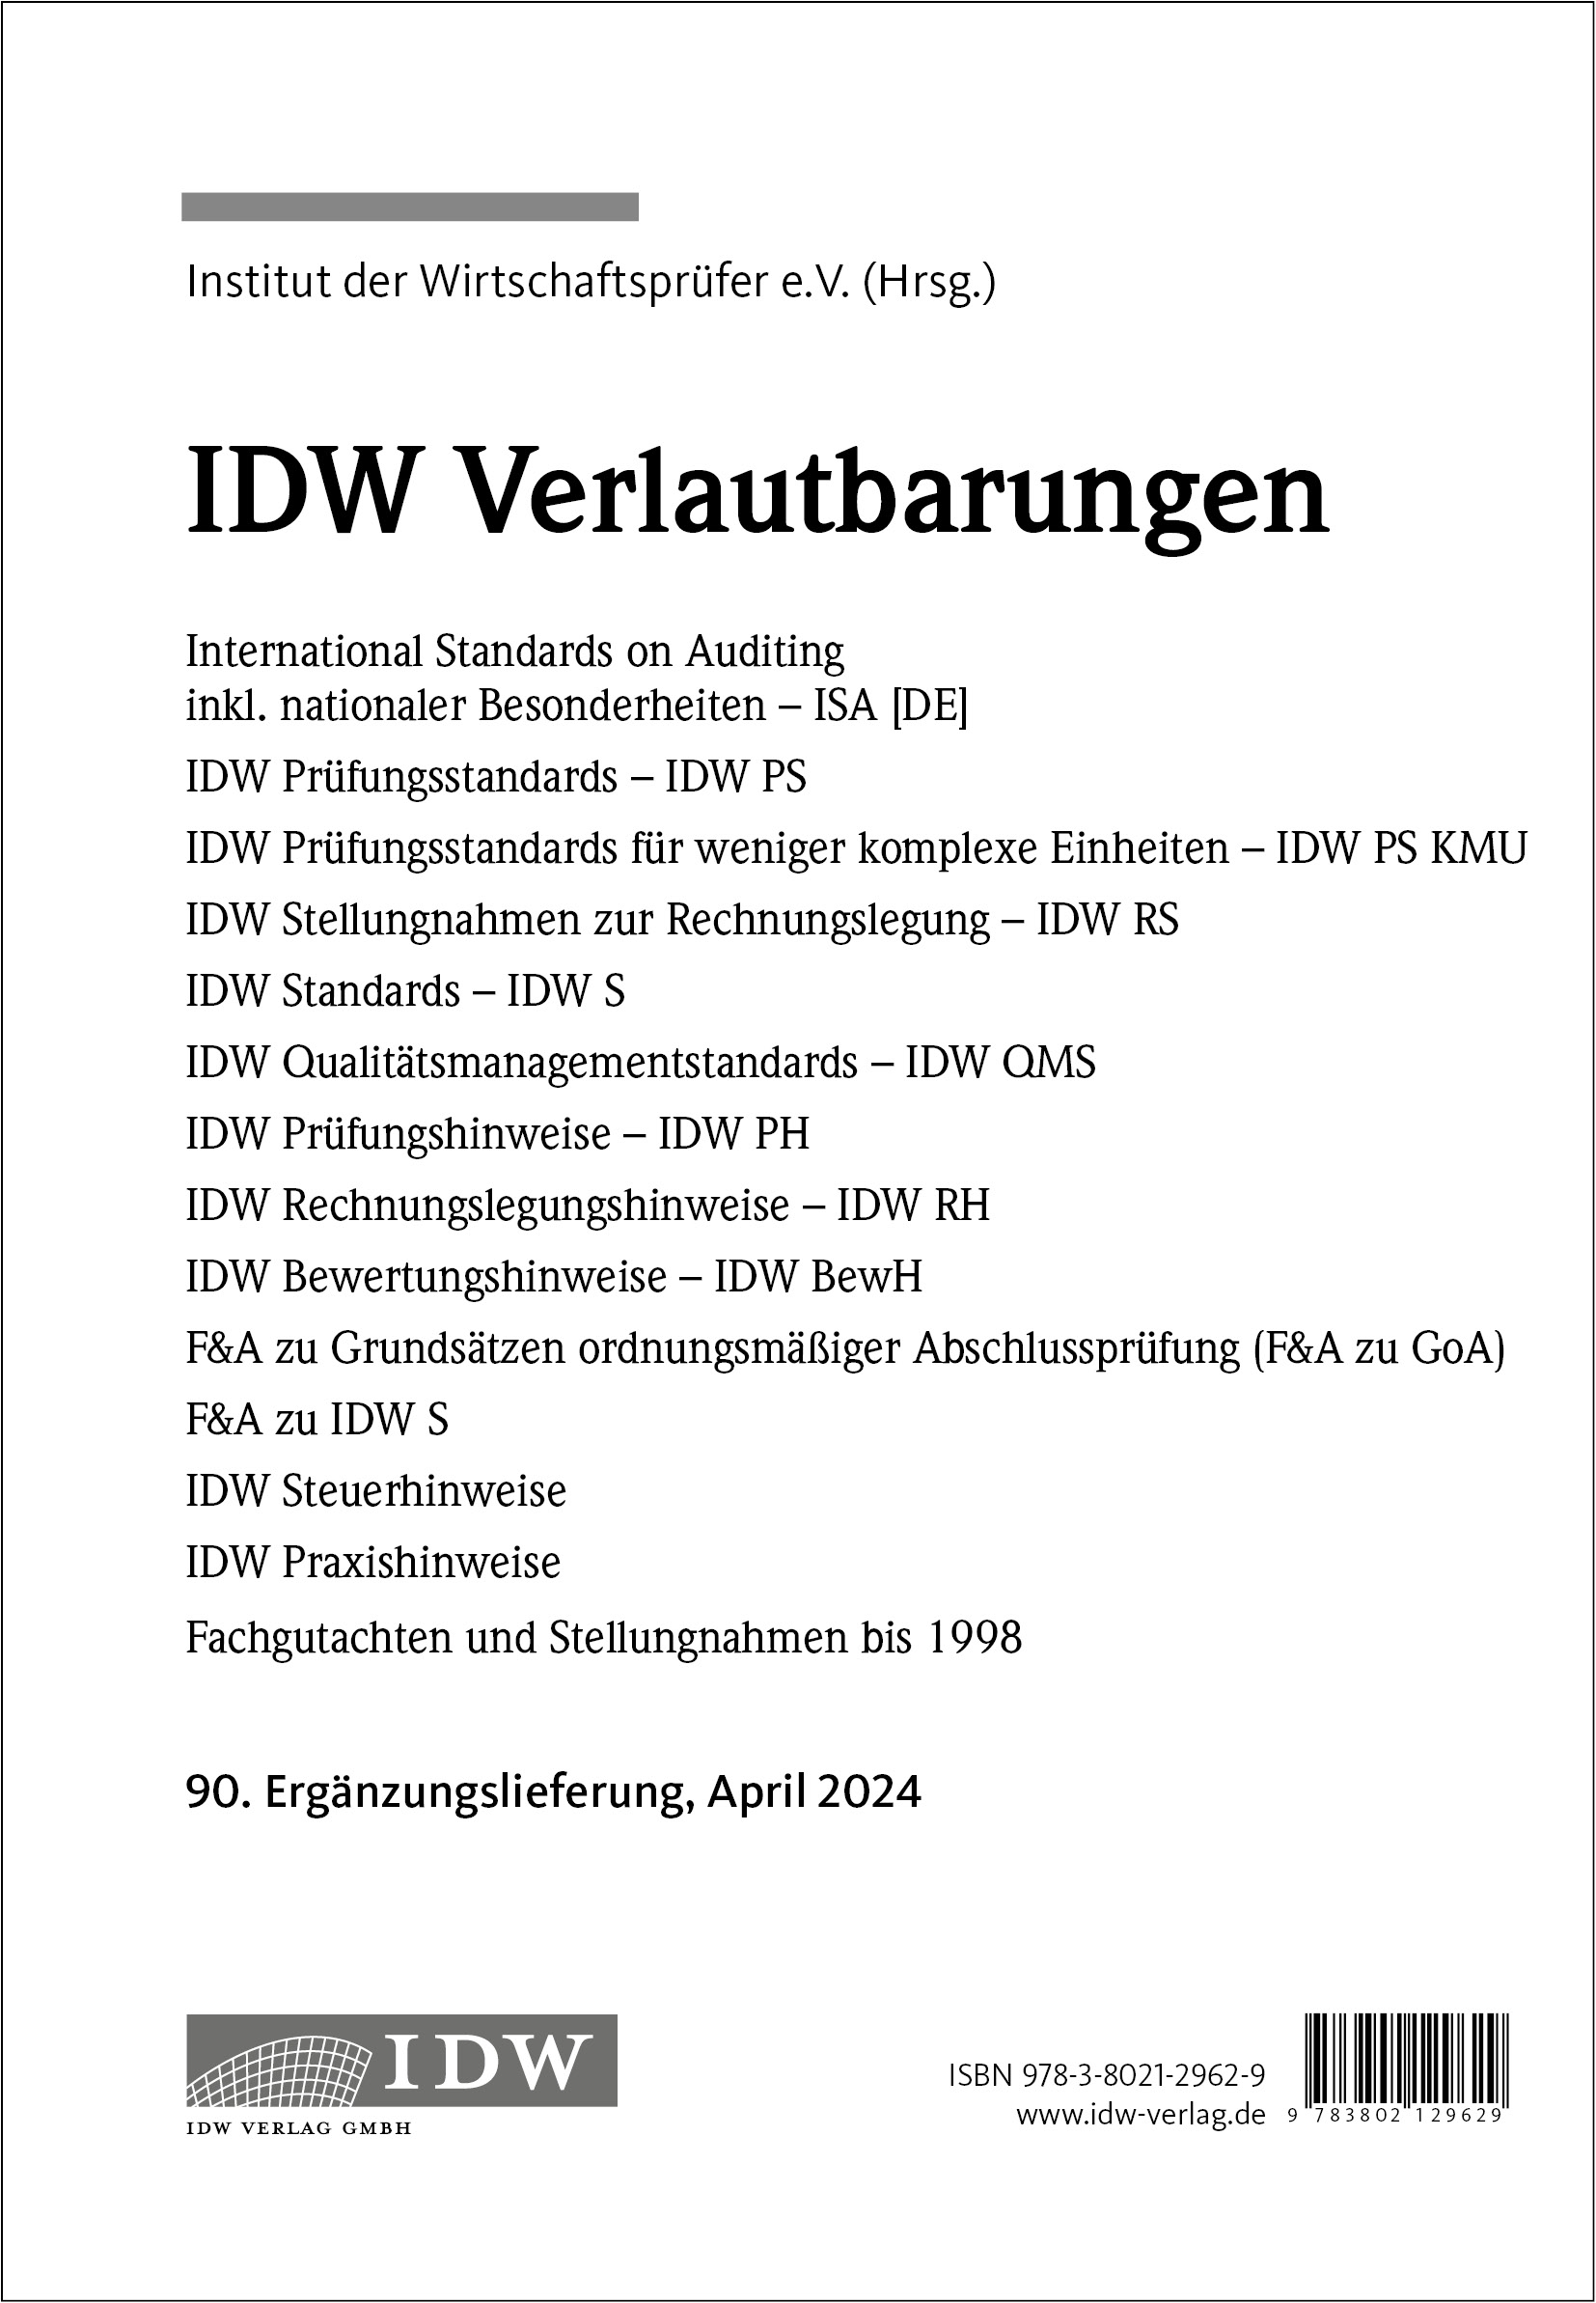 IDW Verlautbarungen 90. Ergänzungslieferung 